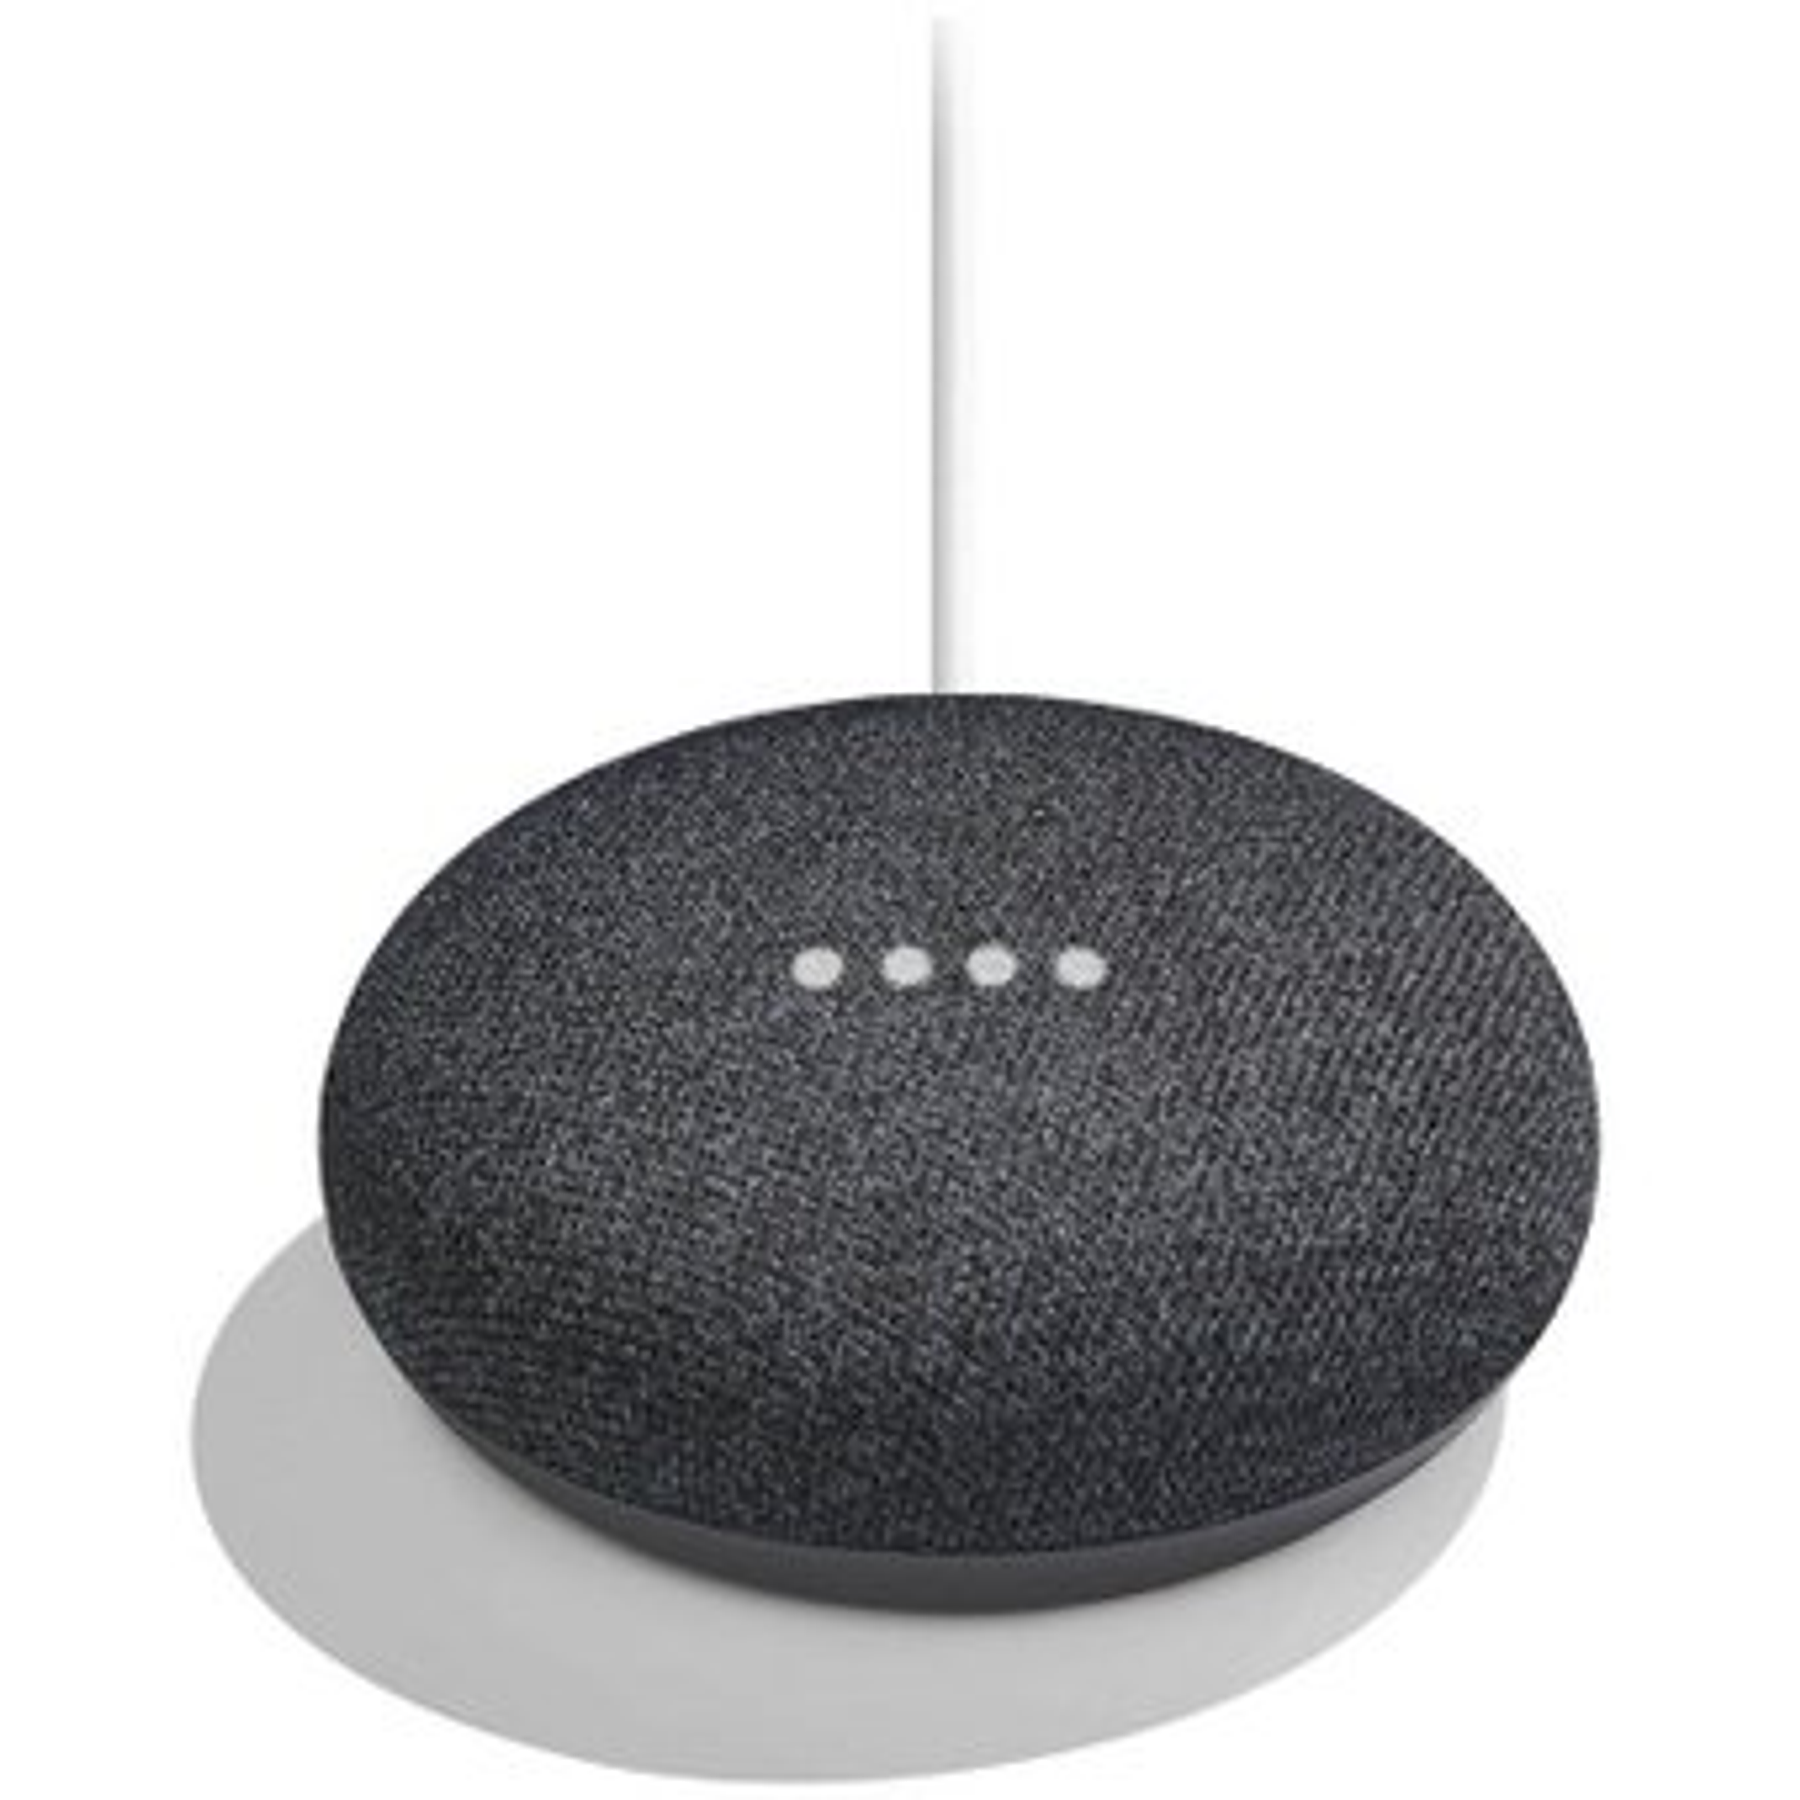 Google Home Mini Asistente de Voz 